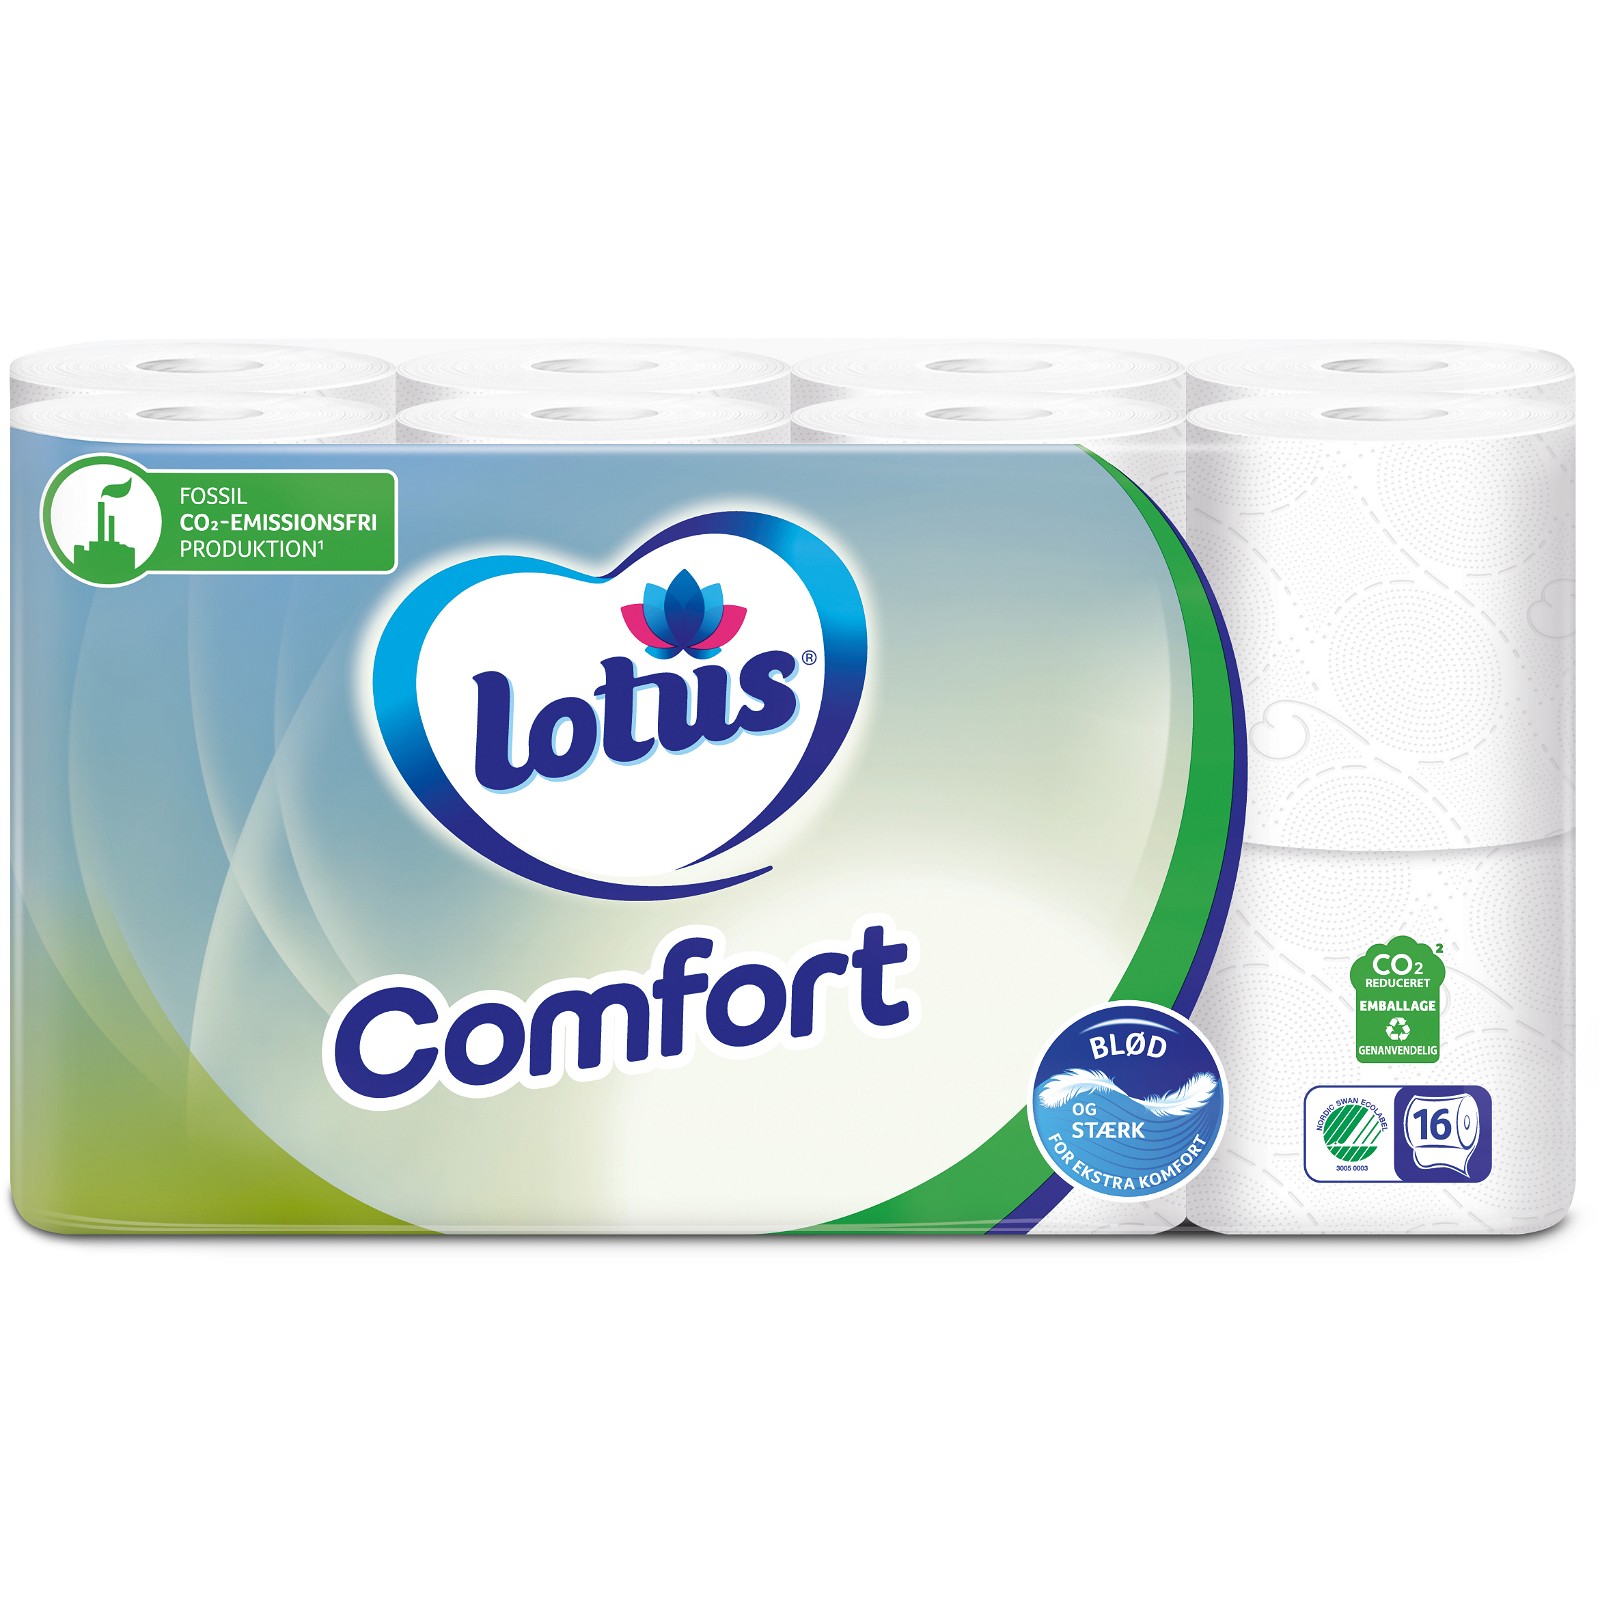 Lotus Comfort toiletpapir 3-lags 16rl